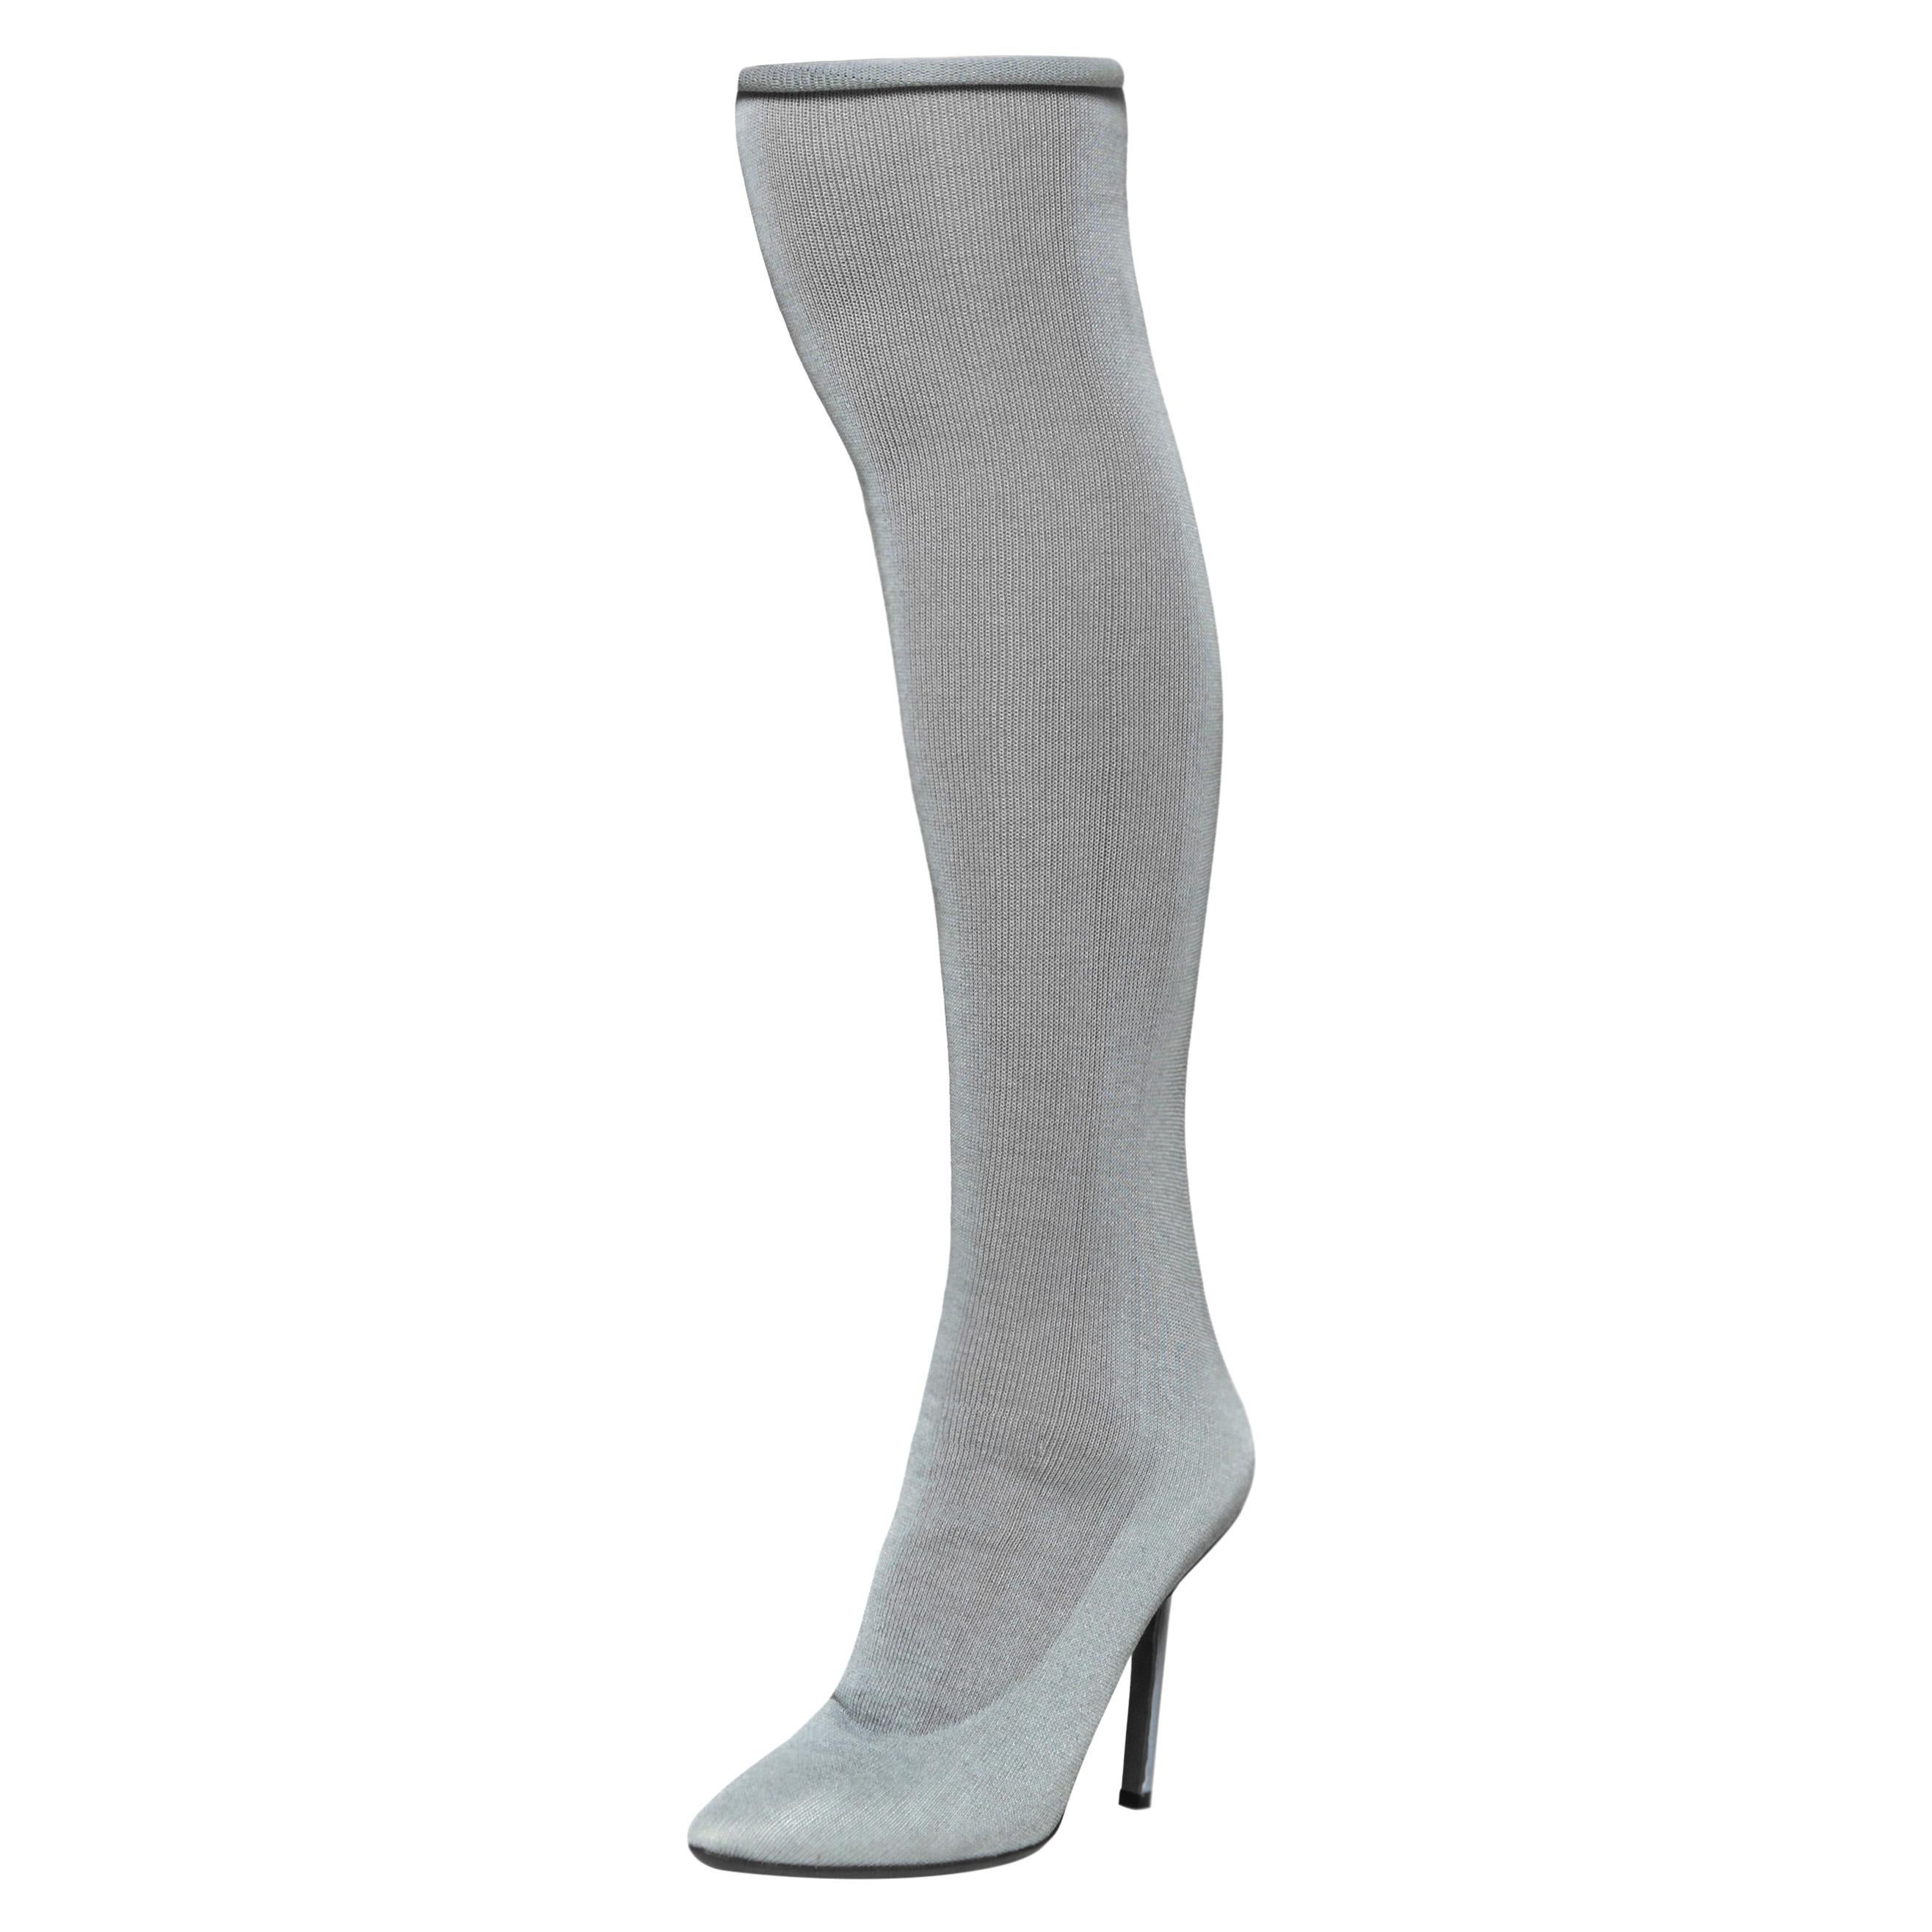 VETEMENTS Black Stretch-Jersey Socks Ankle Boots Blue Heel Women's Size 38  & 40 | eBay